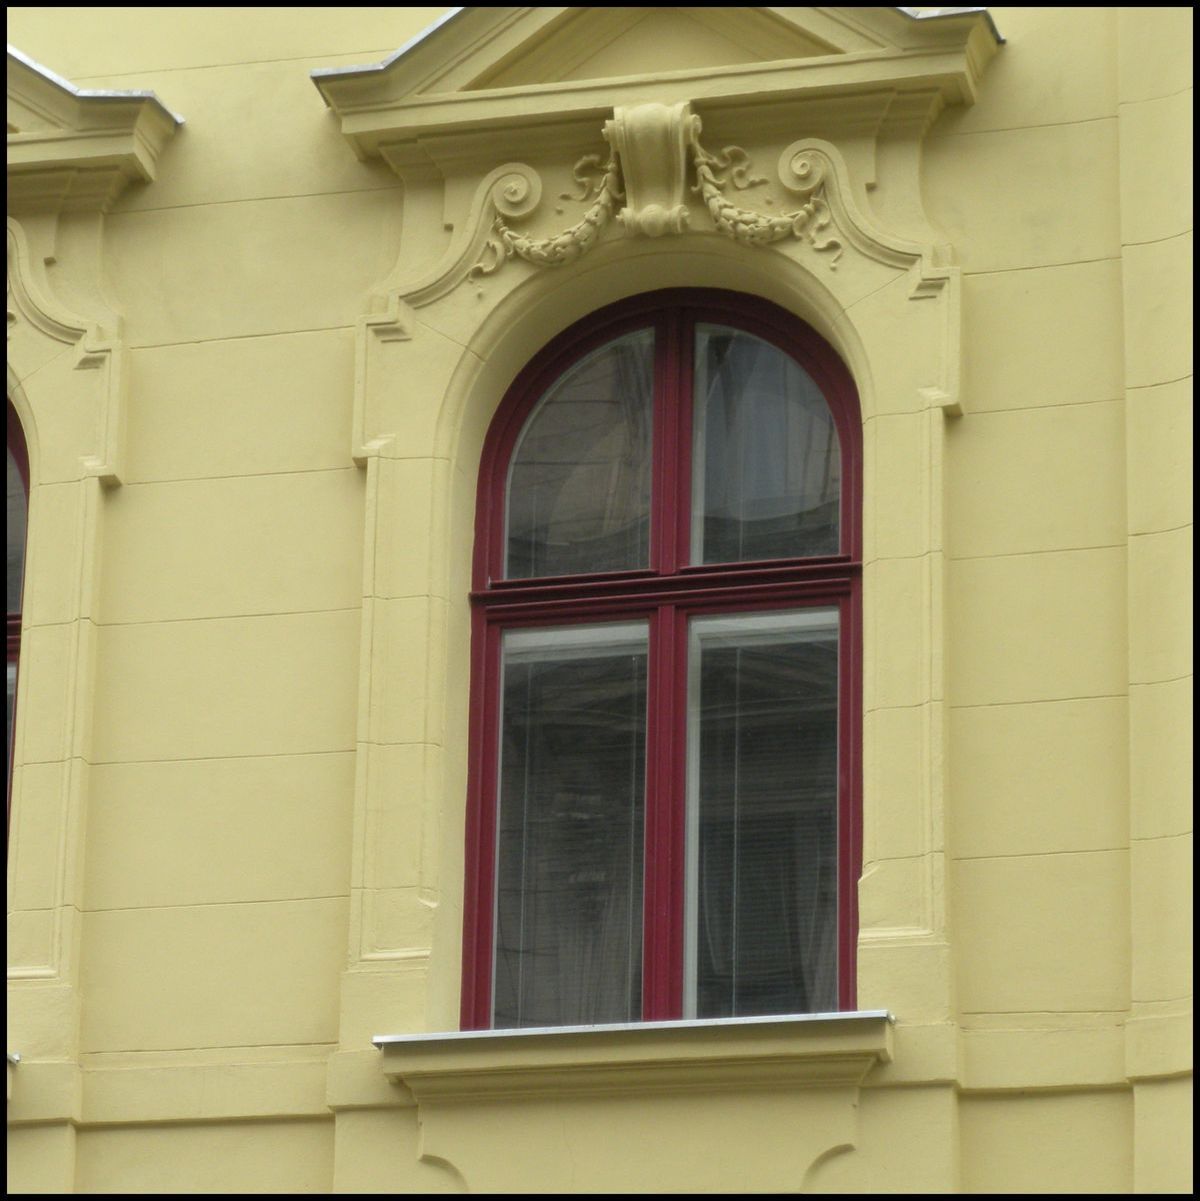 Obloukové kastlové okno vzhledem shodné s původními okny - je tvořeno eurooknem IV-68 a jednoduchými vnitřními křídly